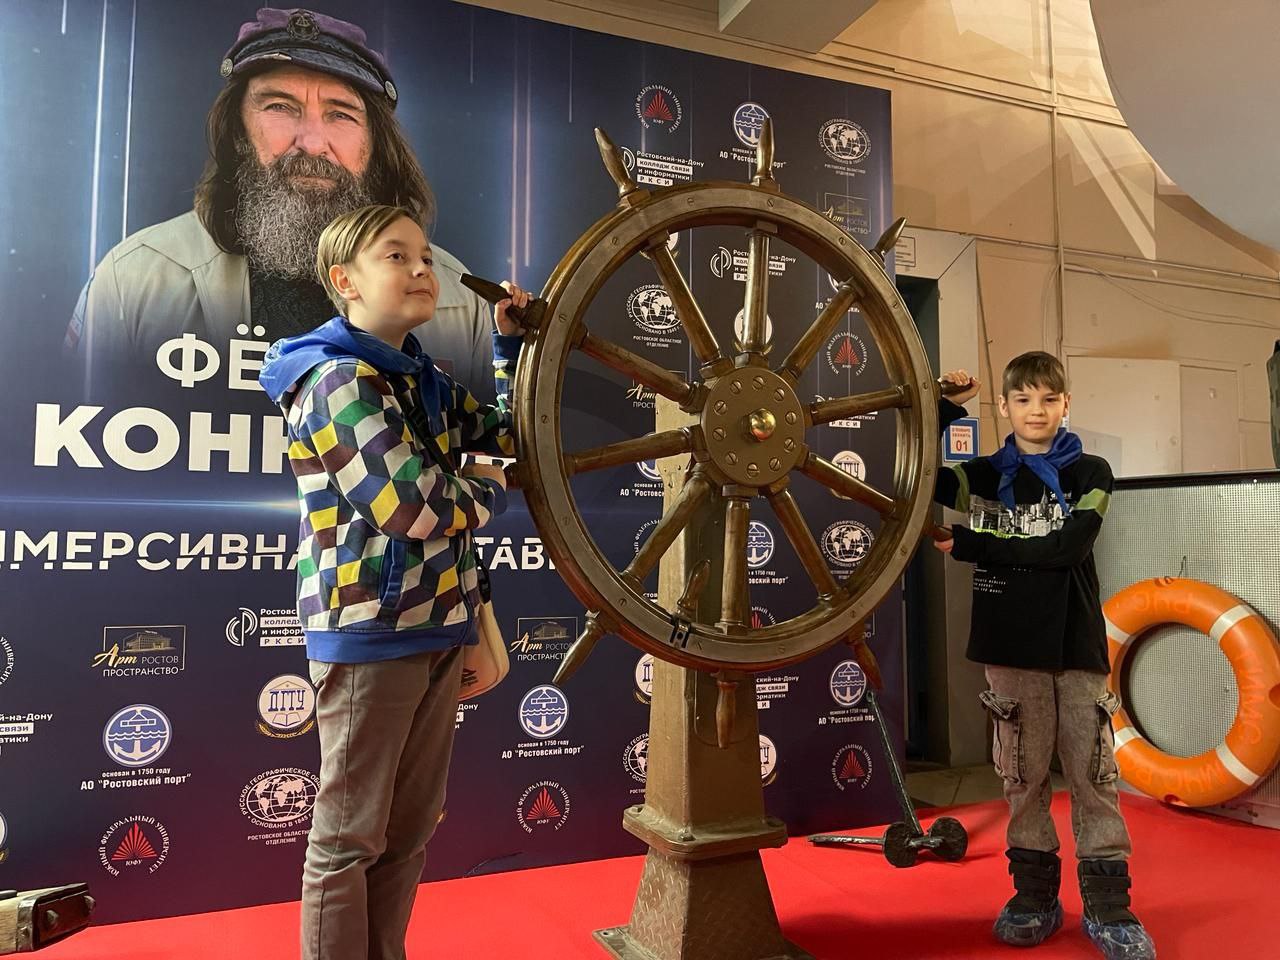 Раджив Мирзалиев организовал для детей из Донбасса посещение выставки Федора Конюхова 